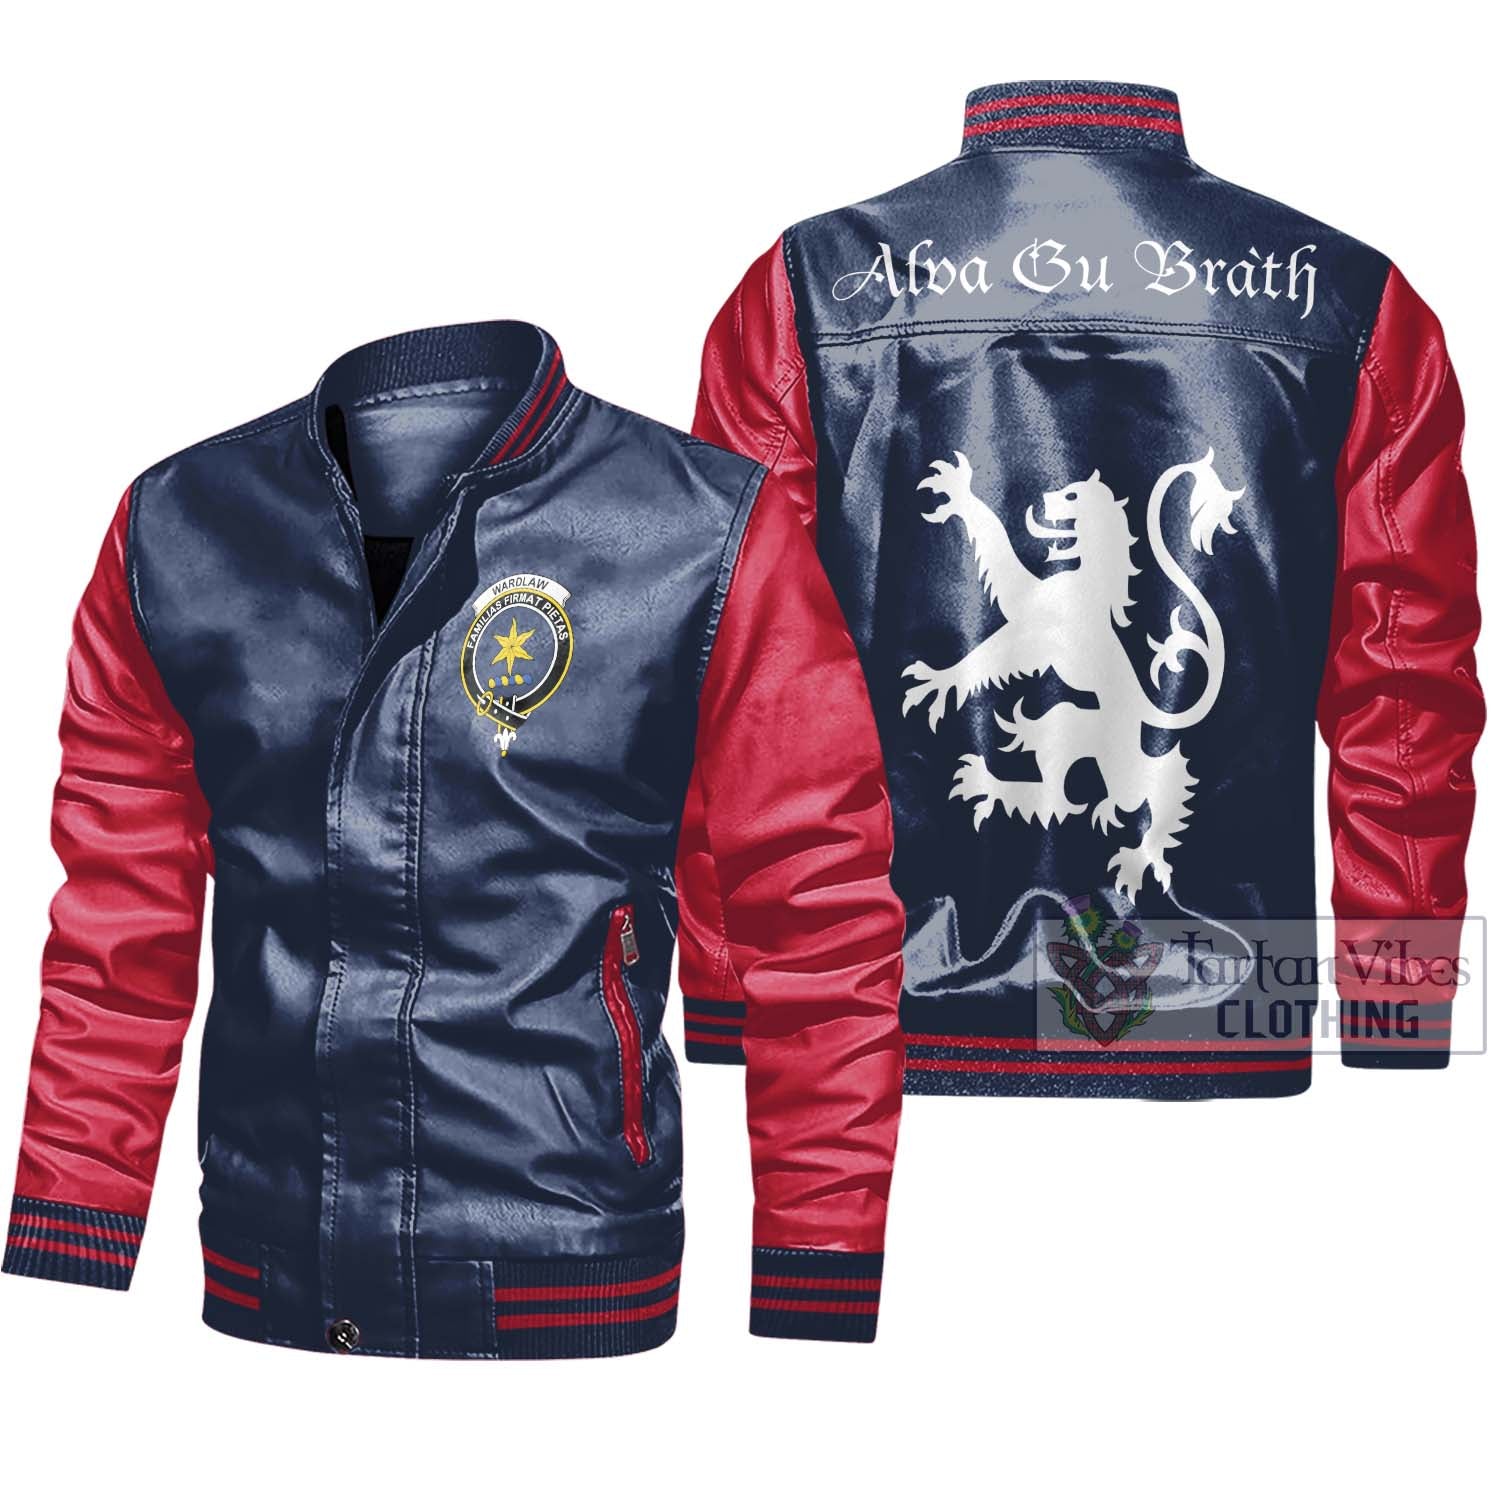 Tartan Vibes Clothing Wardlaw Family Crest Leather Bomber Jacket Lion Rampant Alba Gu Brath Style